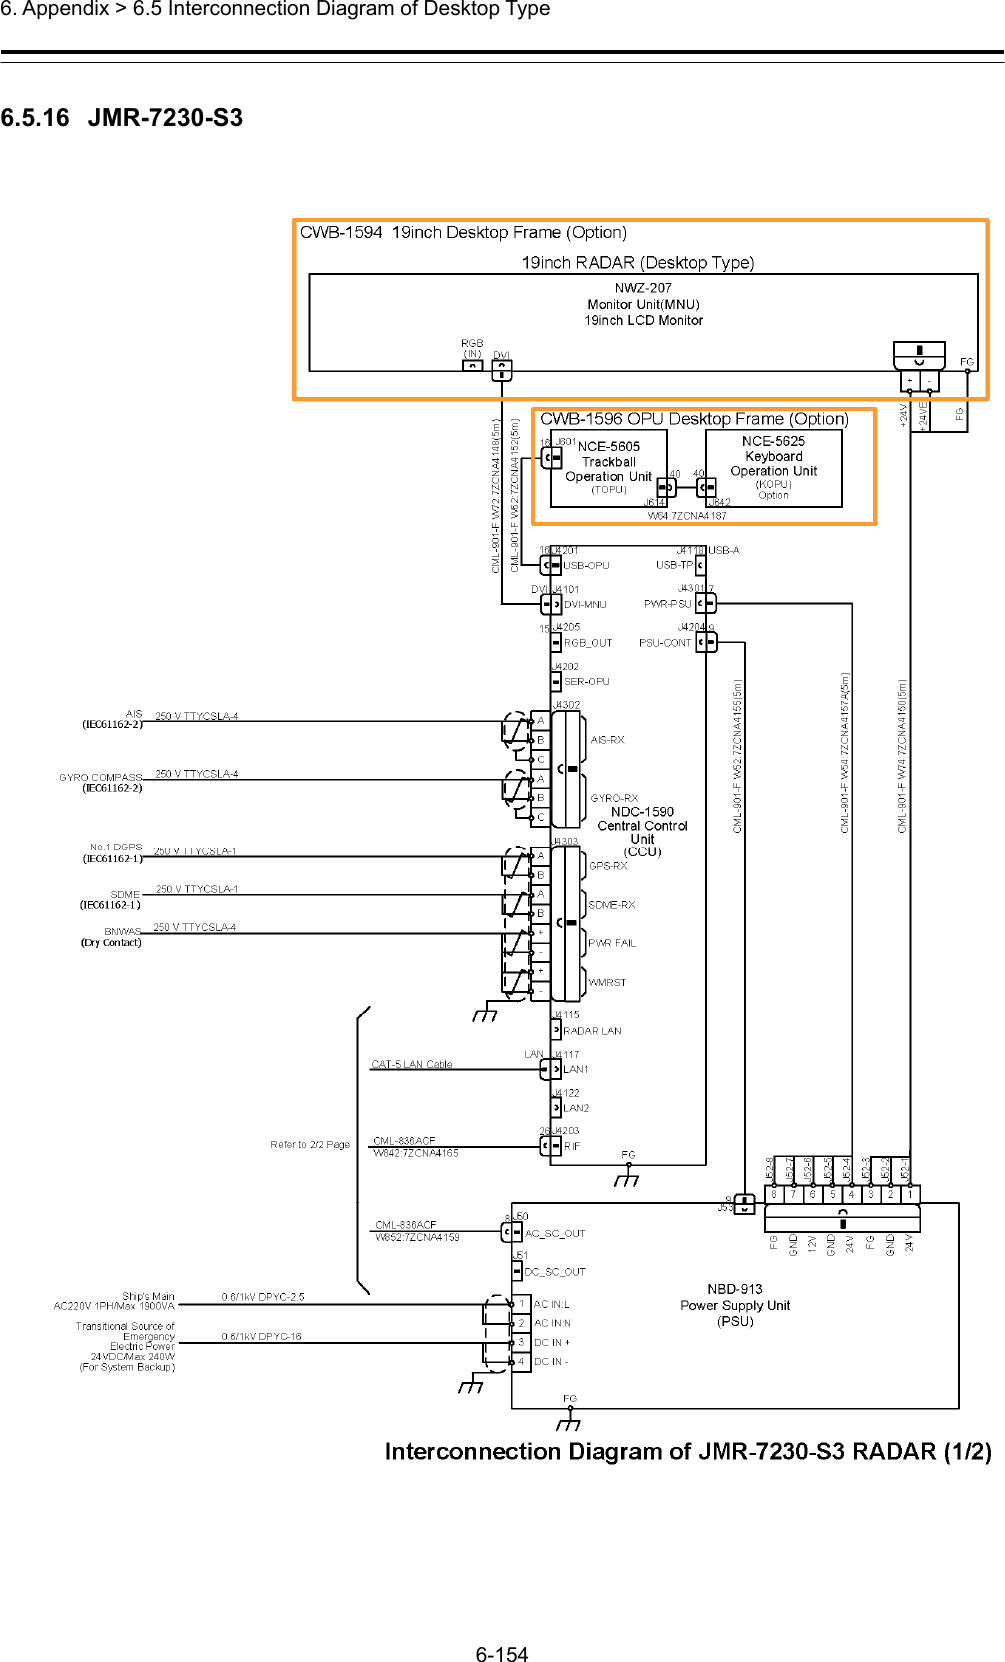  6. Appendix &gt; 6.5 Interconnection Diagram of Desktop Type 6-154  6.5.16  JMR-7230-S3  